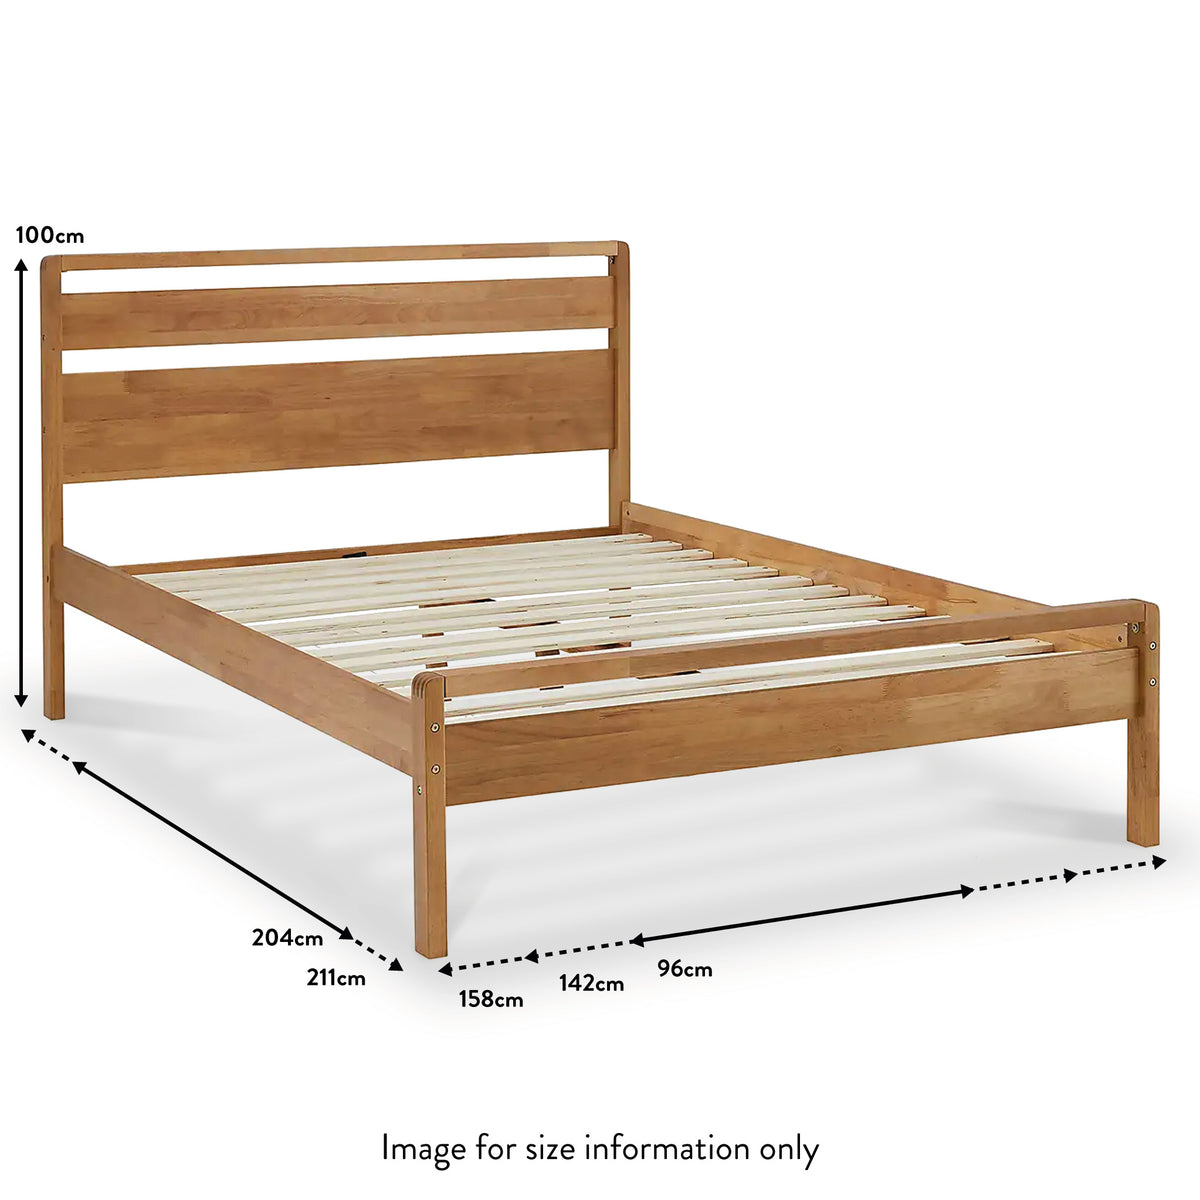 Maxi Oak Bed Frame dimensions